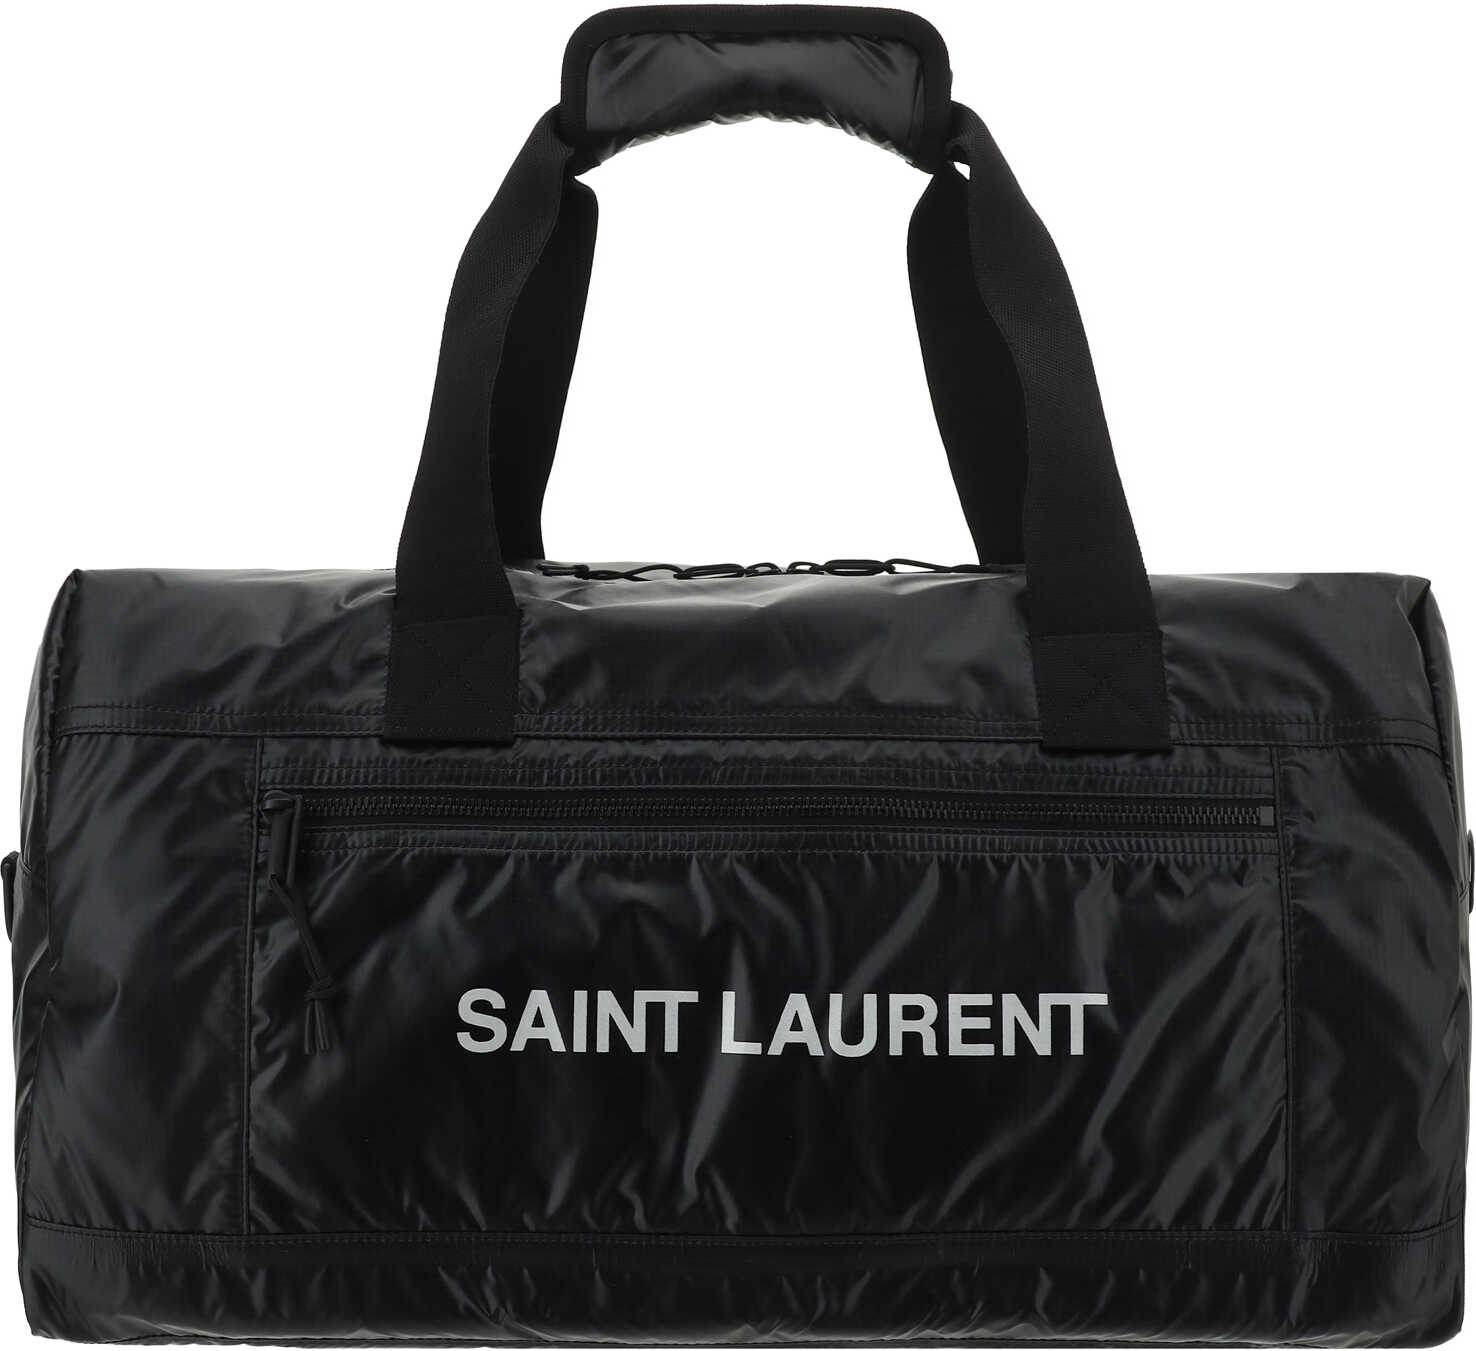 Saint Laurent Saint Laurent Duffle Bag NERO/ARGENTO